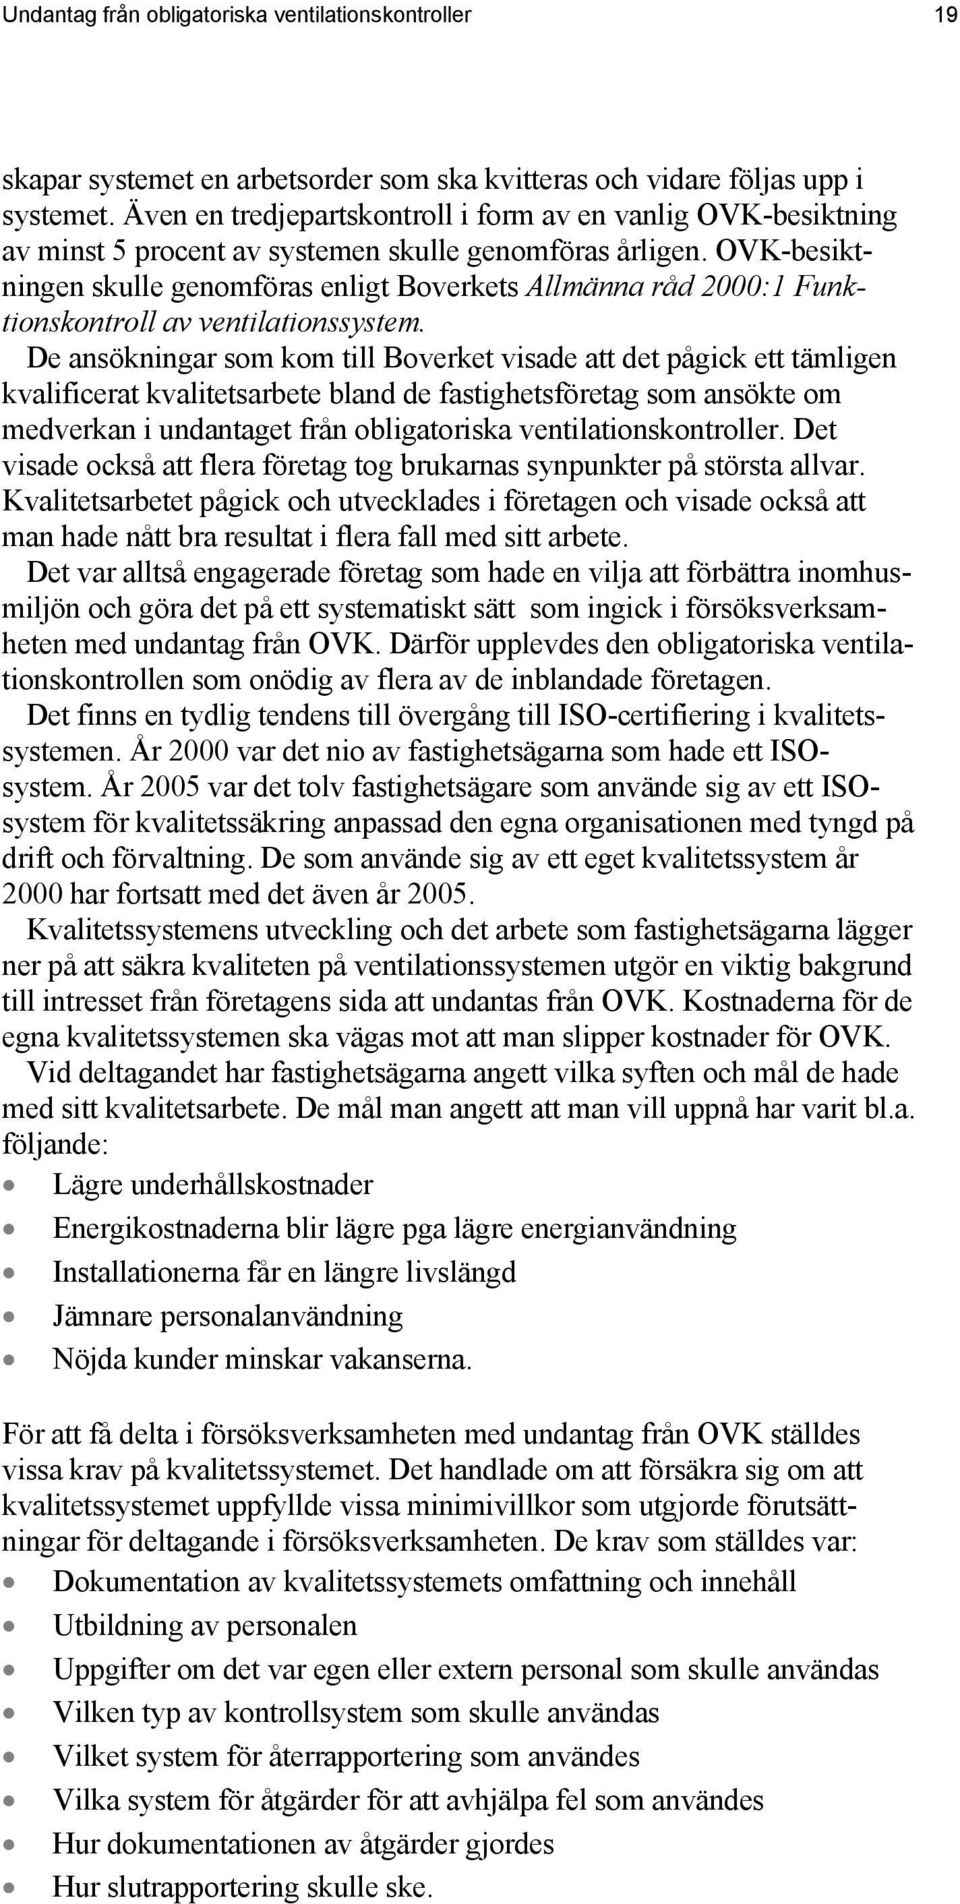 OVK-besiktningen skulle genomföras enligt Boverkets Allmänna råd 2000:1 Funktionskontroll av ventilationssystem.